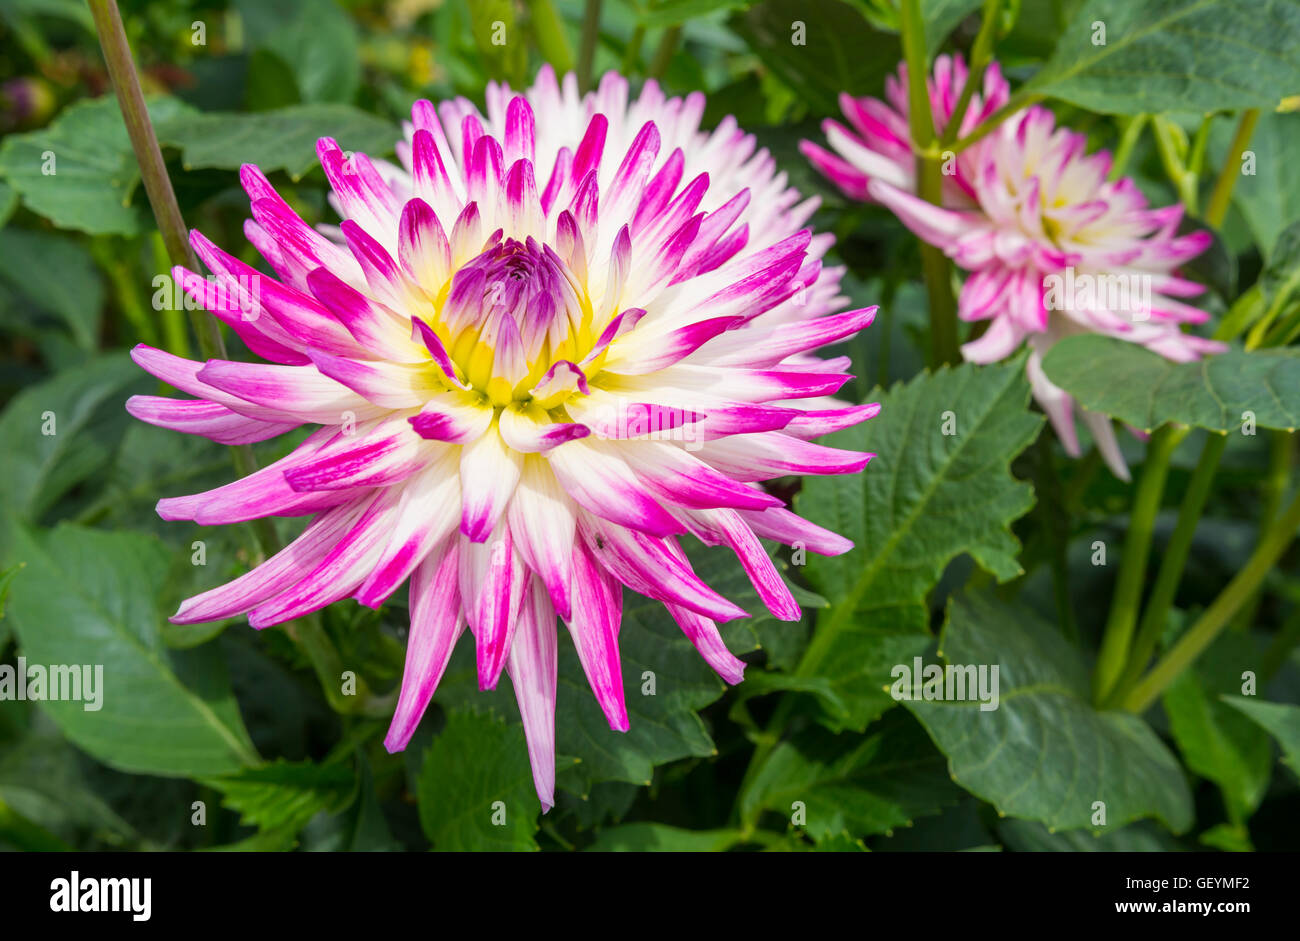 Dahlia 'Jura', une petite fleur de cactus dahlia semi culture des fleurs en été dans le West Sussex, Angleterre, Royaume-Uni. Dahlia fleurs Jura unique près. Dahlias. Banque D'Images